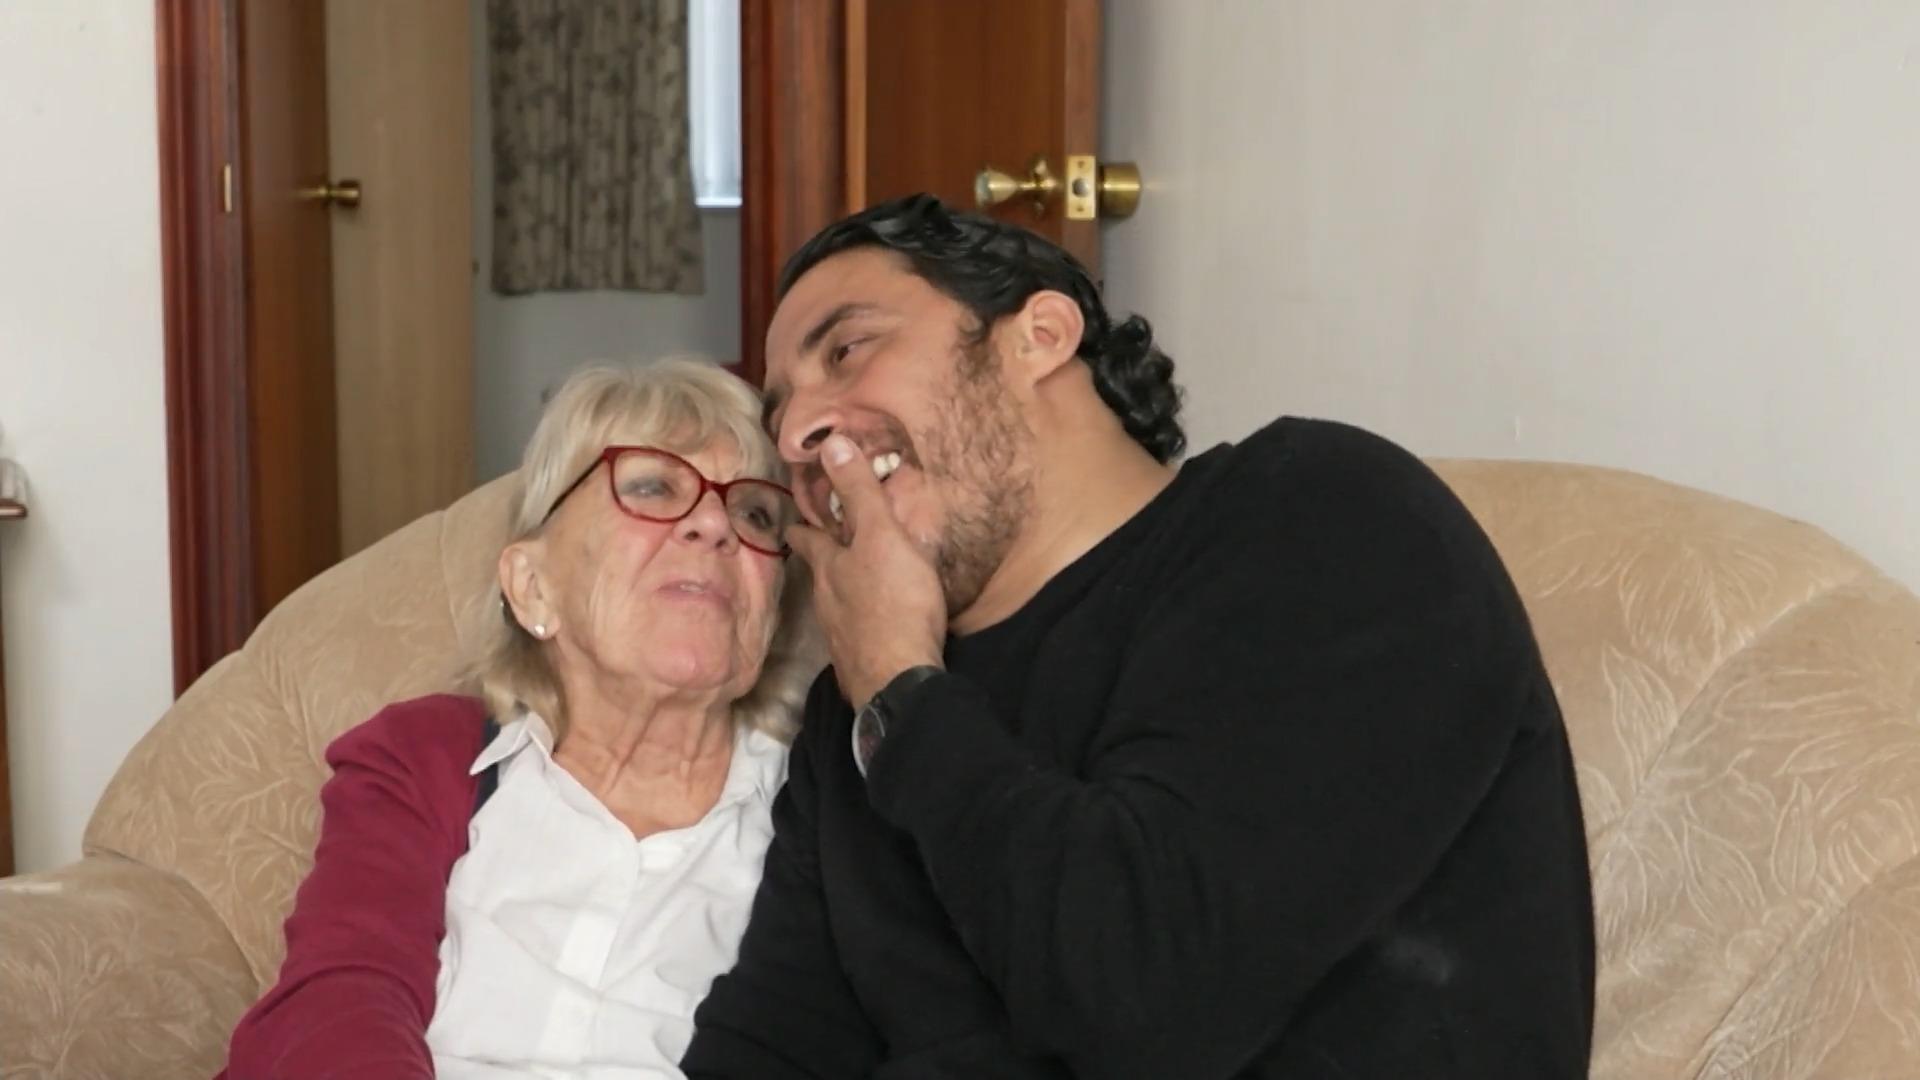 Iris und Mohamed - verliebt und sex-verrückt Sie 83, er 28, beide glücklich